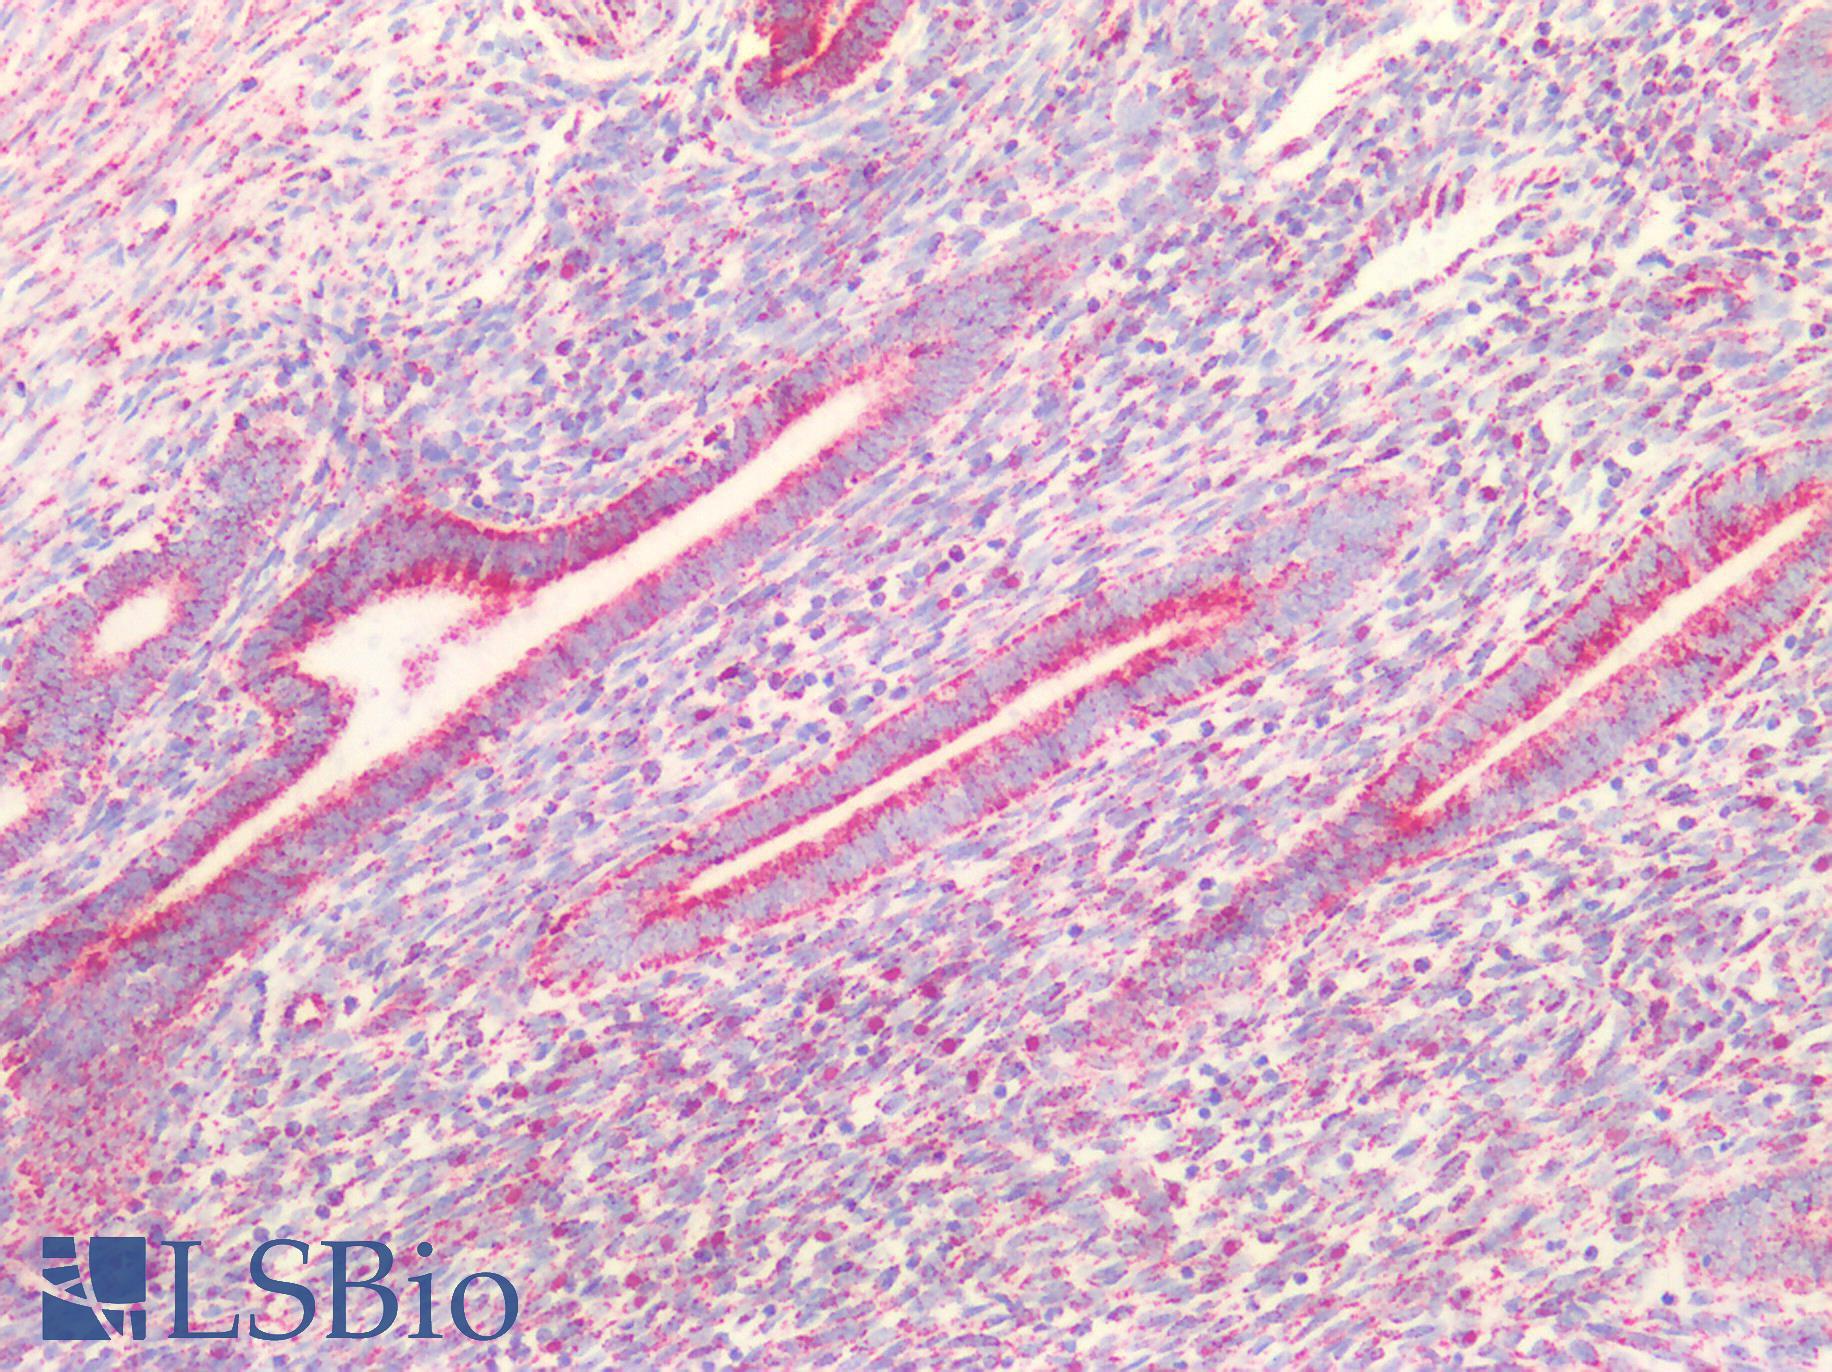 PVR / CD155 Antibody - Human Uterus: Formalin-Fixed, Paraffin-Embedded (FFPE)